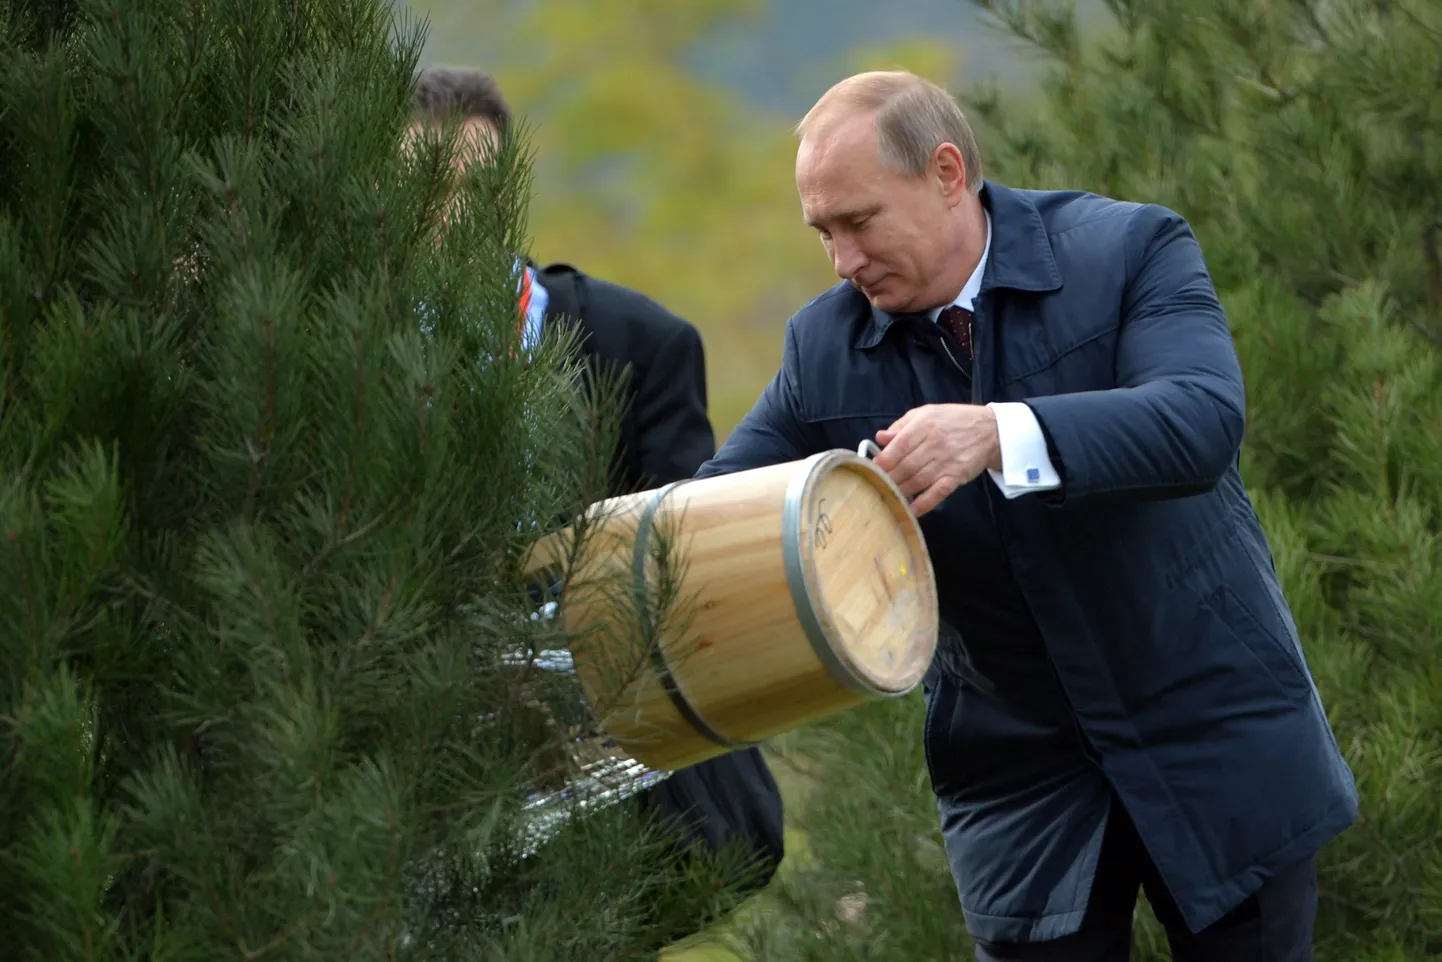 Vene president Vladimir Putin kastab Hiinas tseremoonia osana puud.